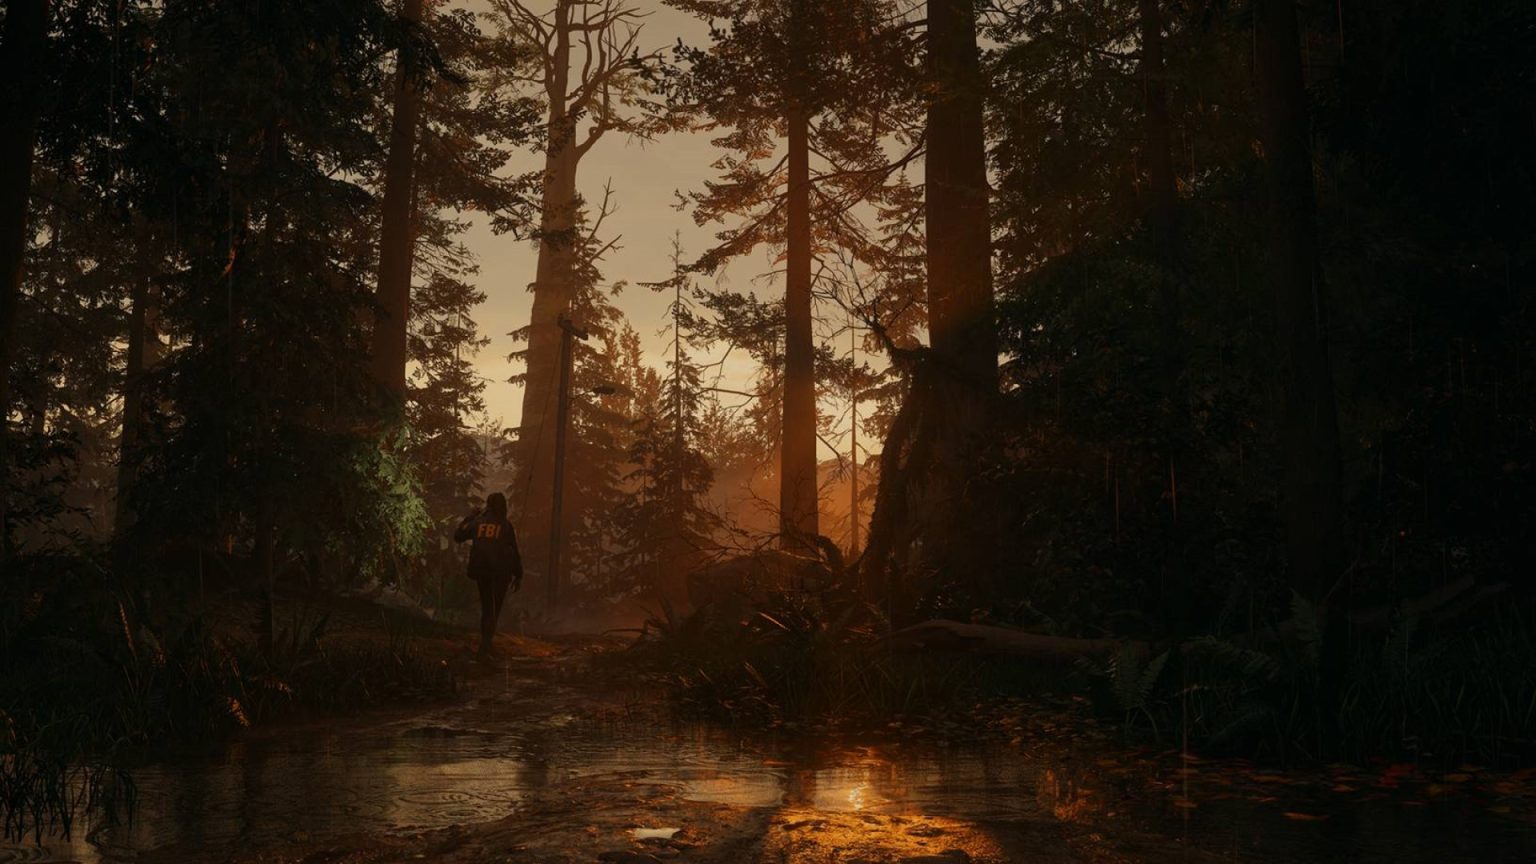 《心灵杀手2》将放慢游戏节奏战斗元素将少于第一部图片2